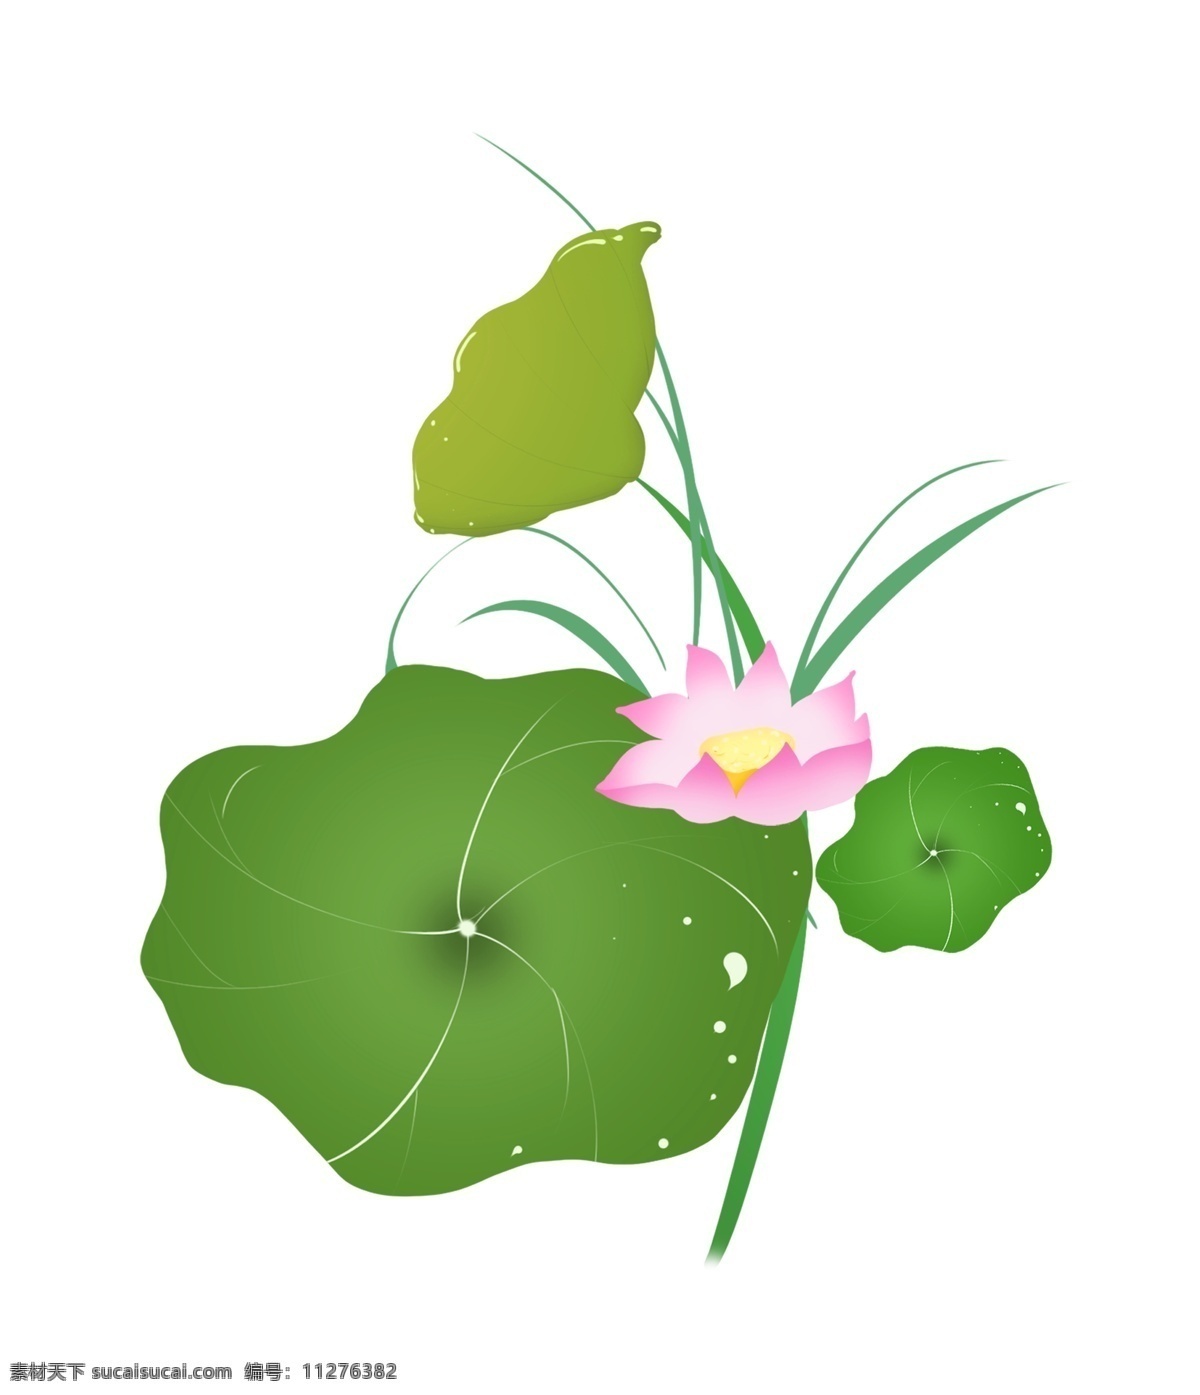 精美 的卡 通 荷花 插画 唯美的荷花 绿色的荷叶 盛开的荷花 卡通植物插画 花朵 植物 创意植物插画